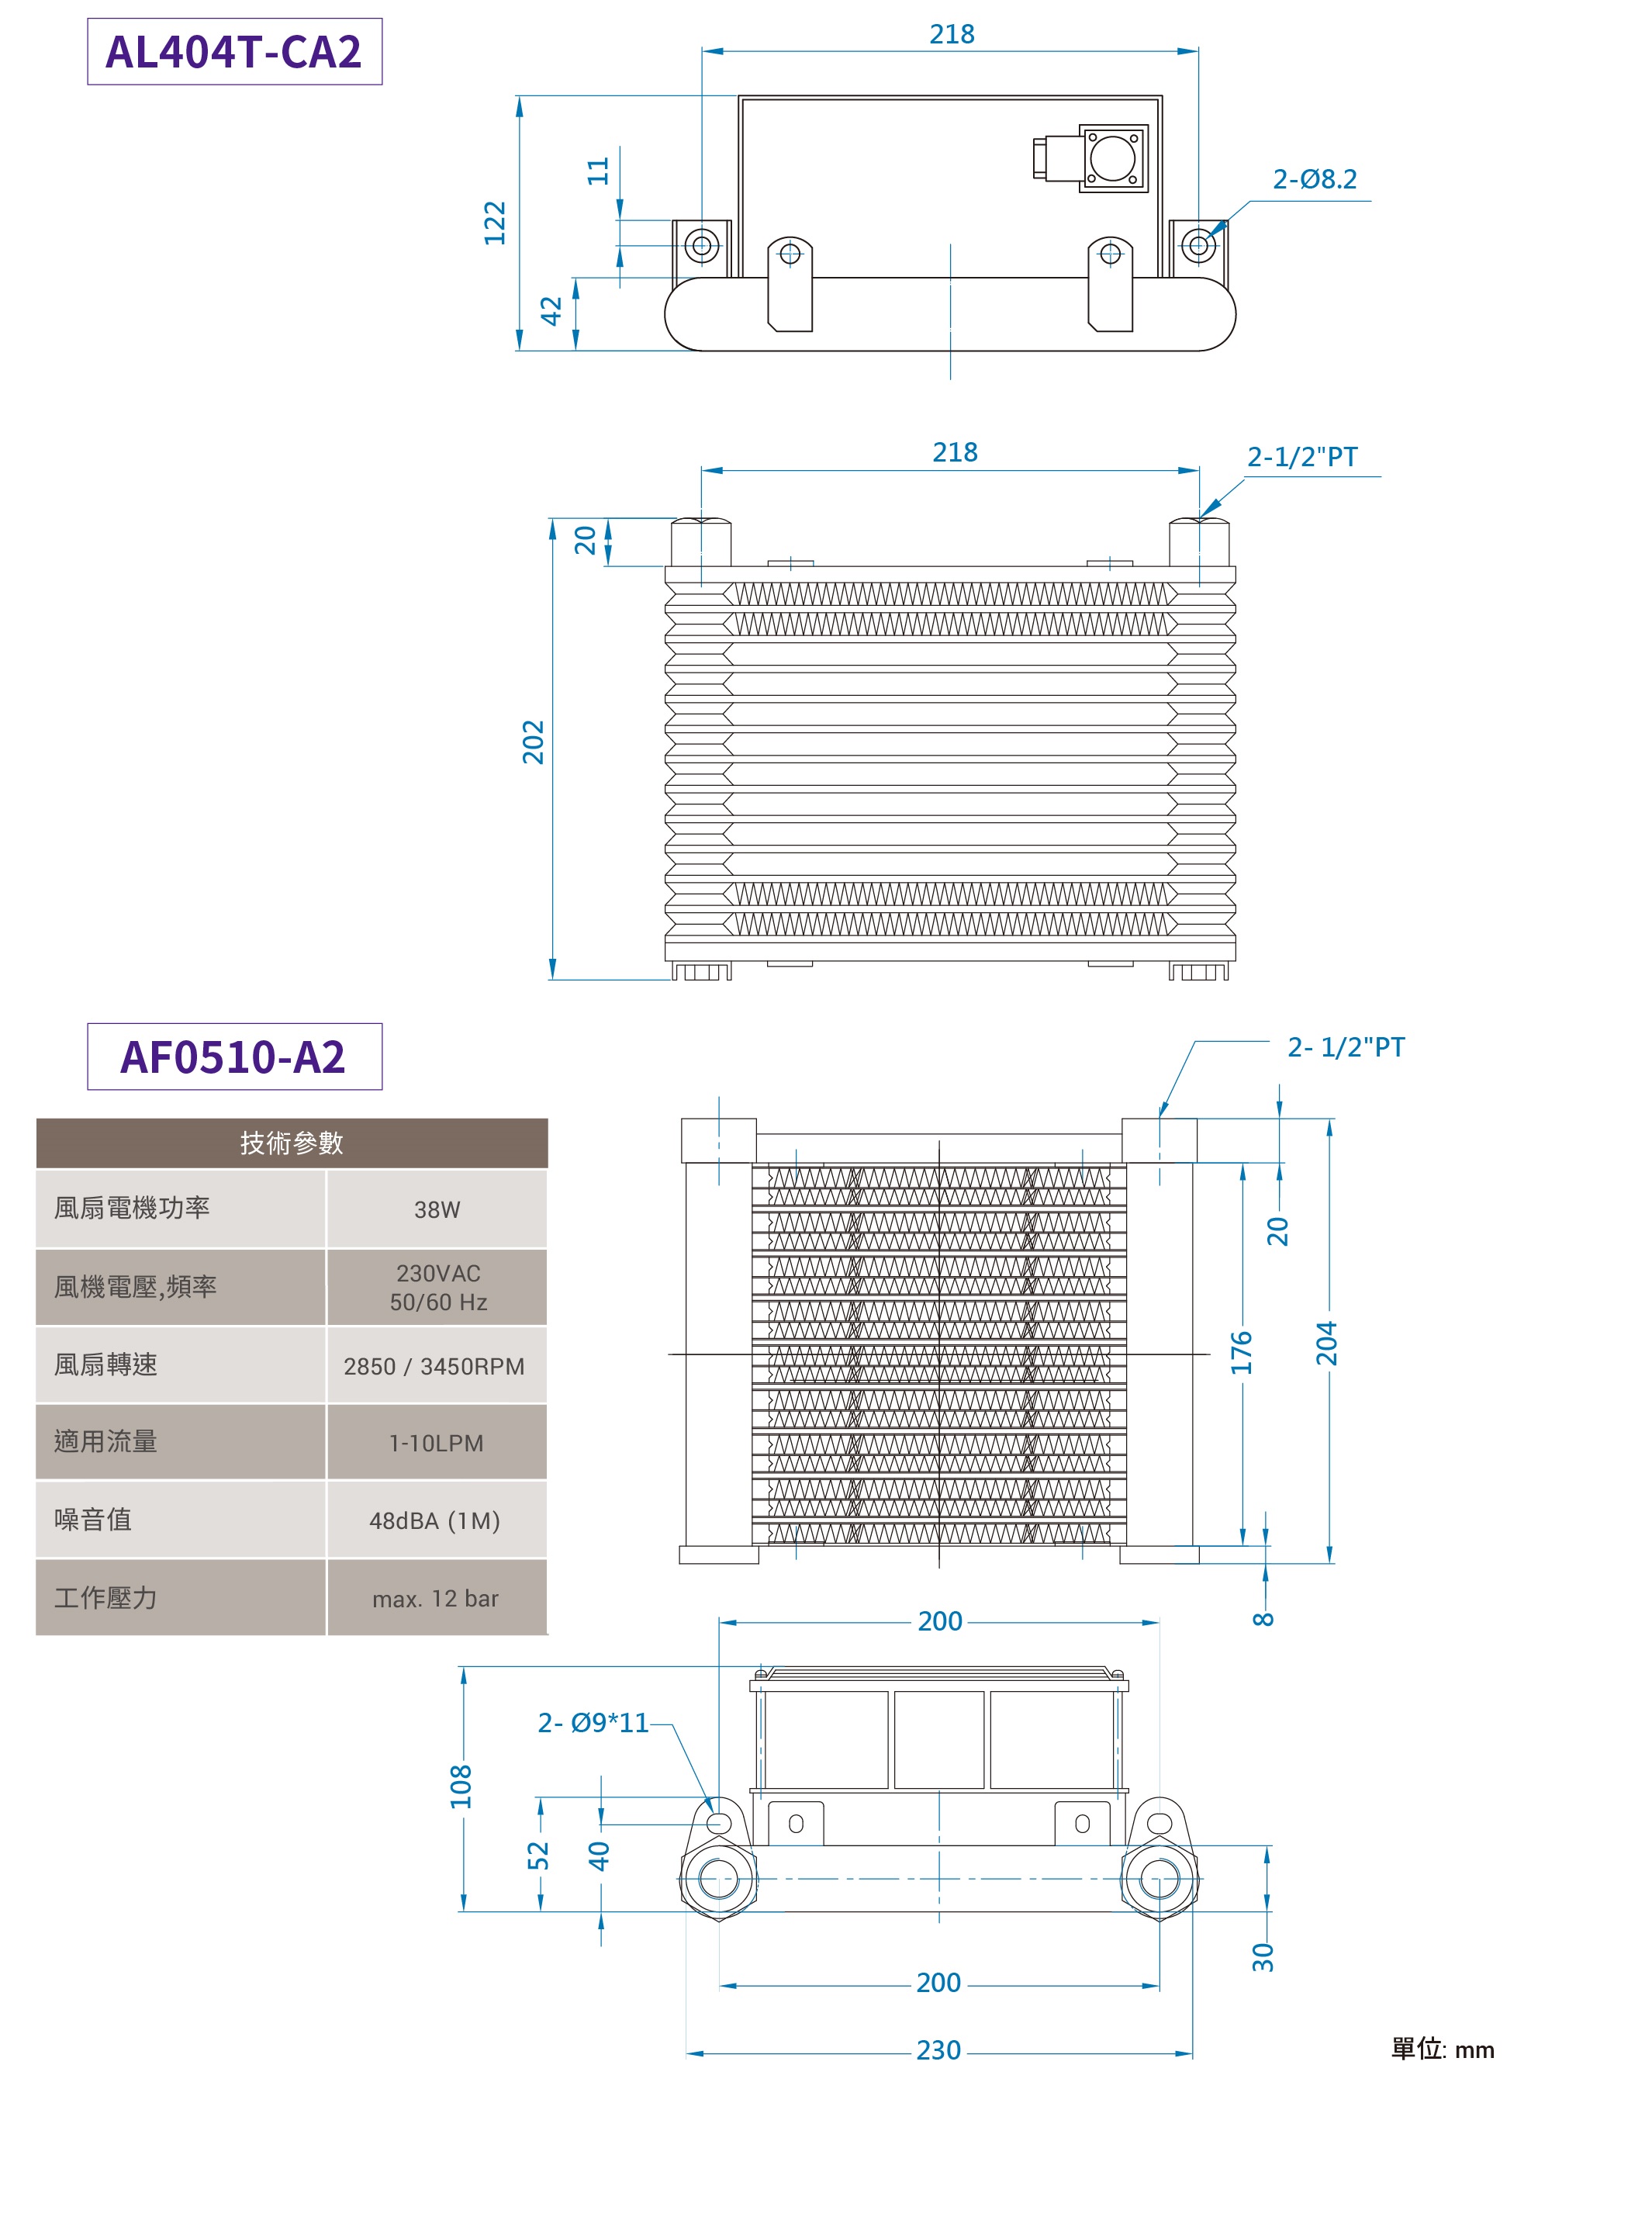  CML中低壓型風冷式油冷卻器,外型尺寸,產品圖面AL404TCA2, AF0510-A2